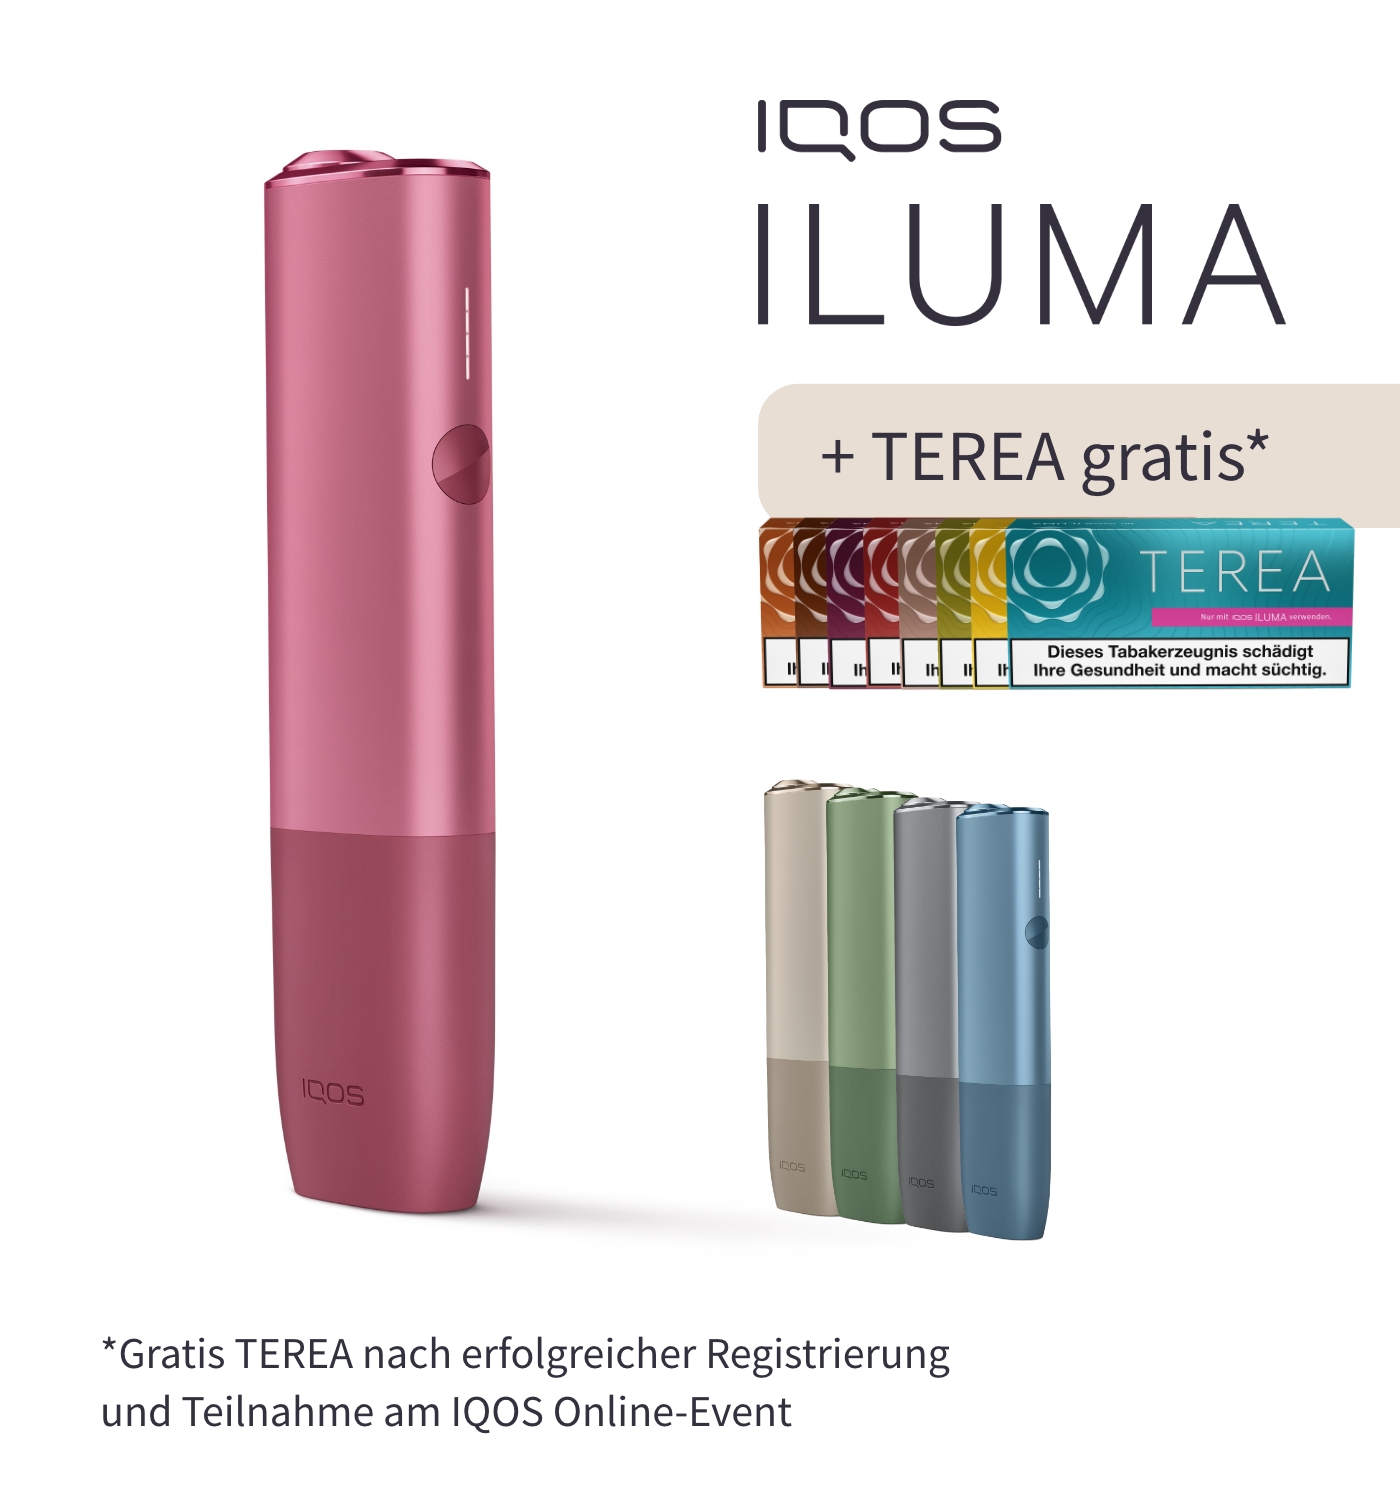 Entdecke die neue IQOS ILUMA ▻ Ab sofort bei uns erhältlich!— Tabakfamilie